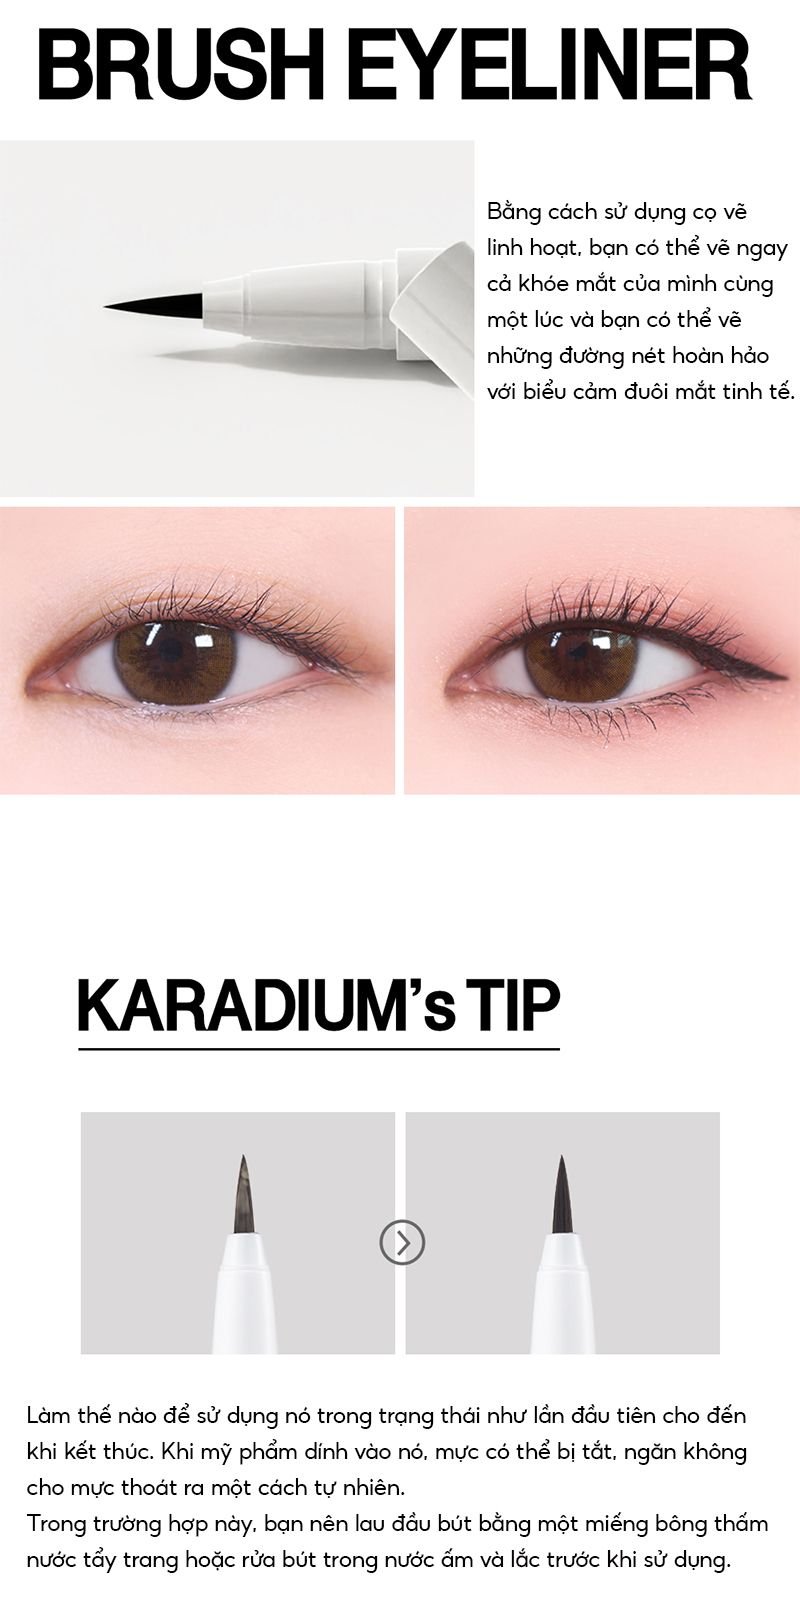 Nếu bạn muốn tìm một loại kẻ mắt nước chống trôi chất lượng, Karadium Waterproof Brush Liner sẽ không khiến bạn thất vọng. Cùng sản phẩm này, bạn có thể sử dụng màu sắc đa dạng và đường kẻ mắt chính xác một cách dễ dàng. Hãy khám phá ngay!